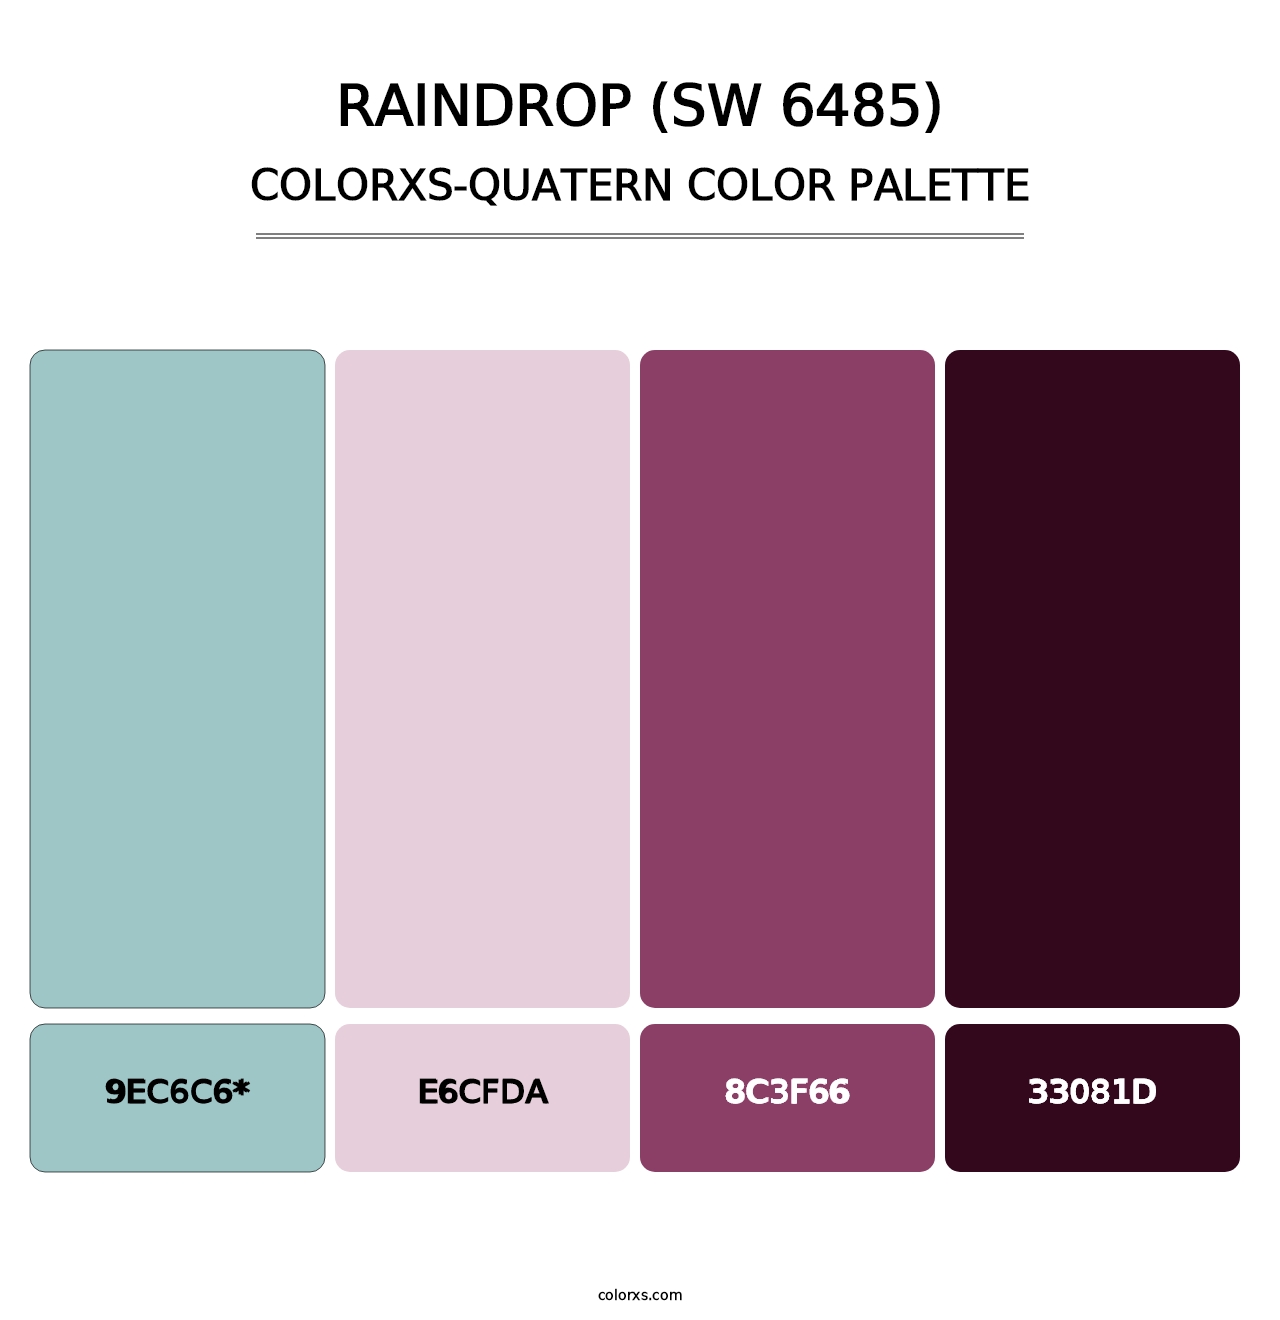 Raindrop (SW 6485) - Colorxs Quatern Palette